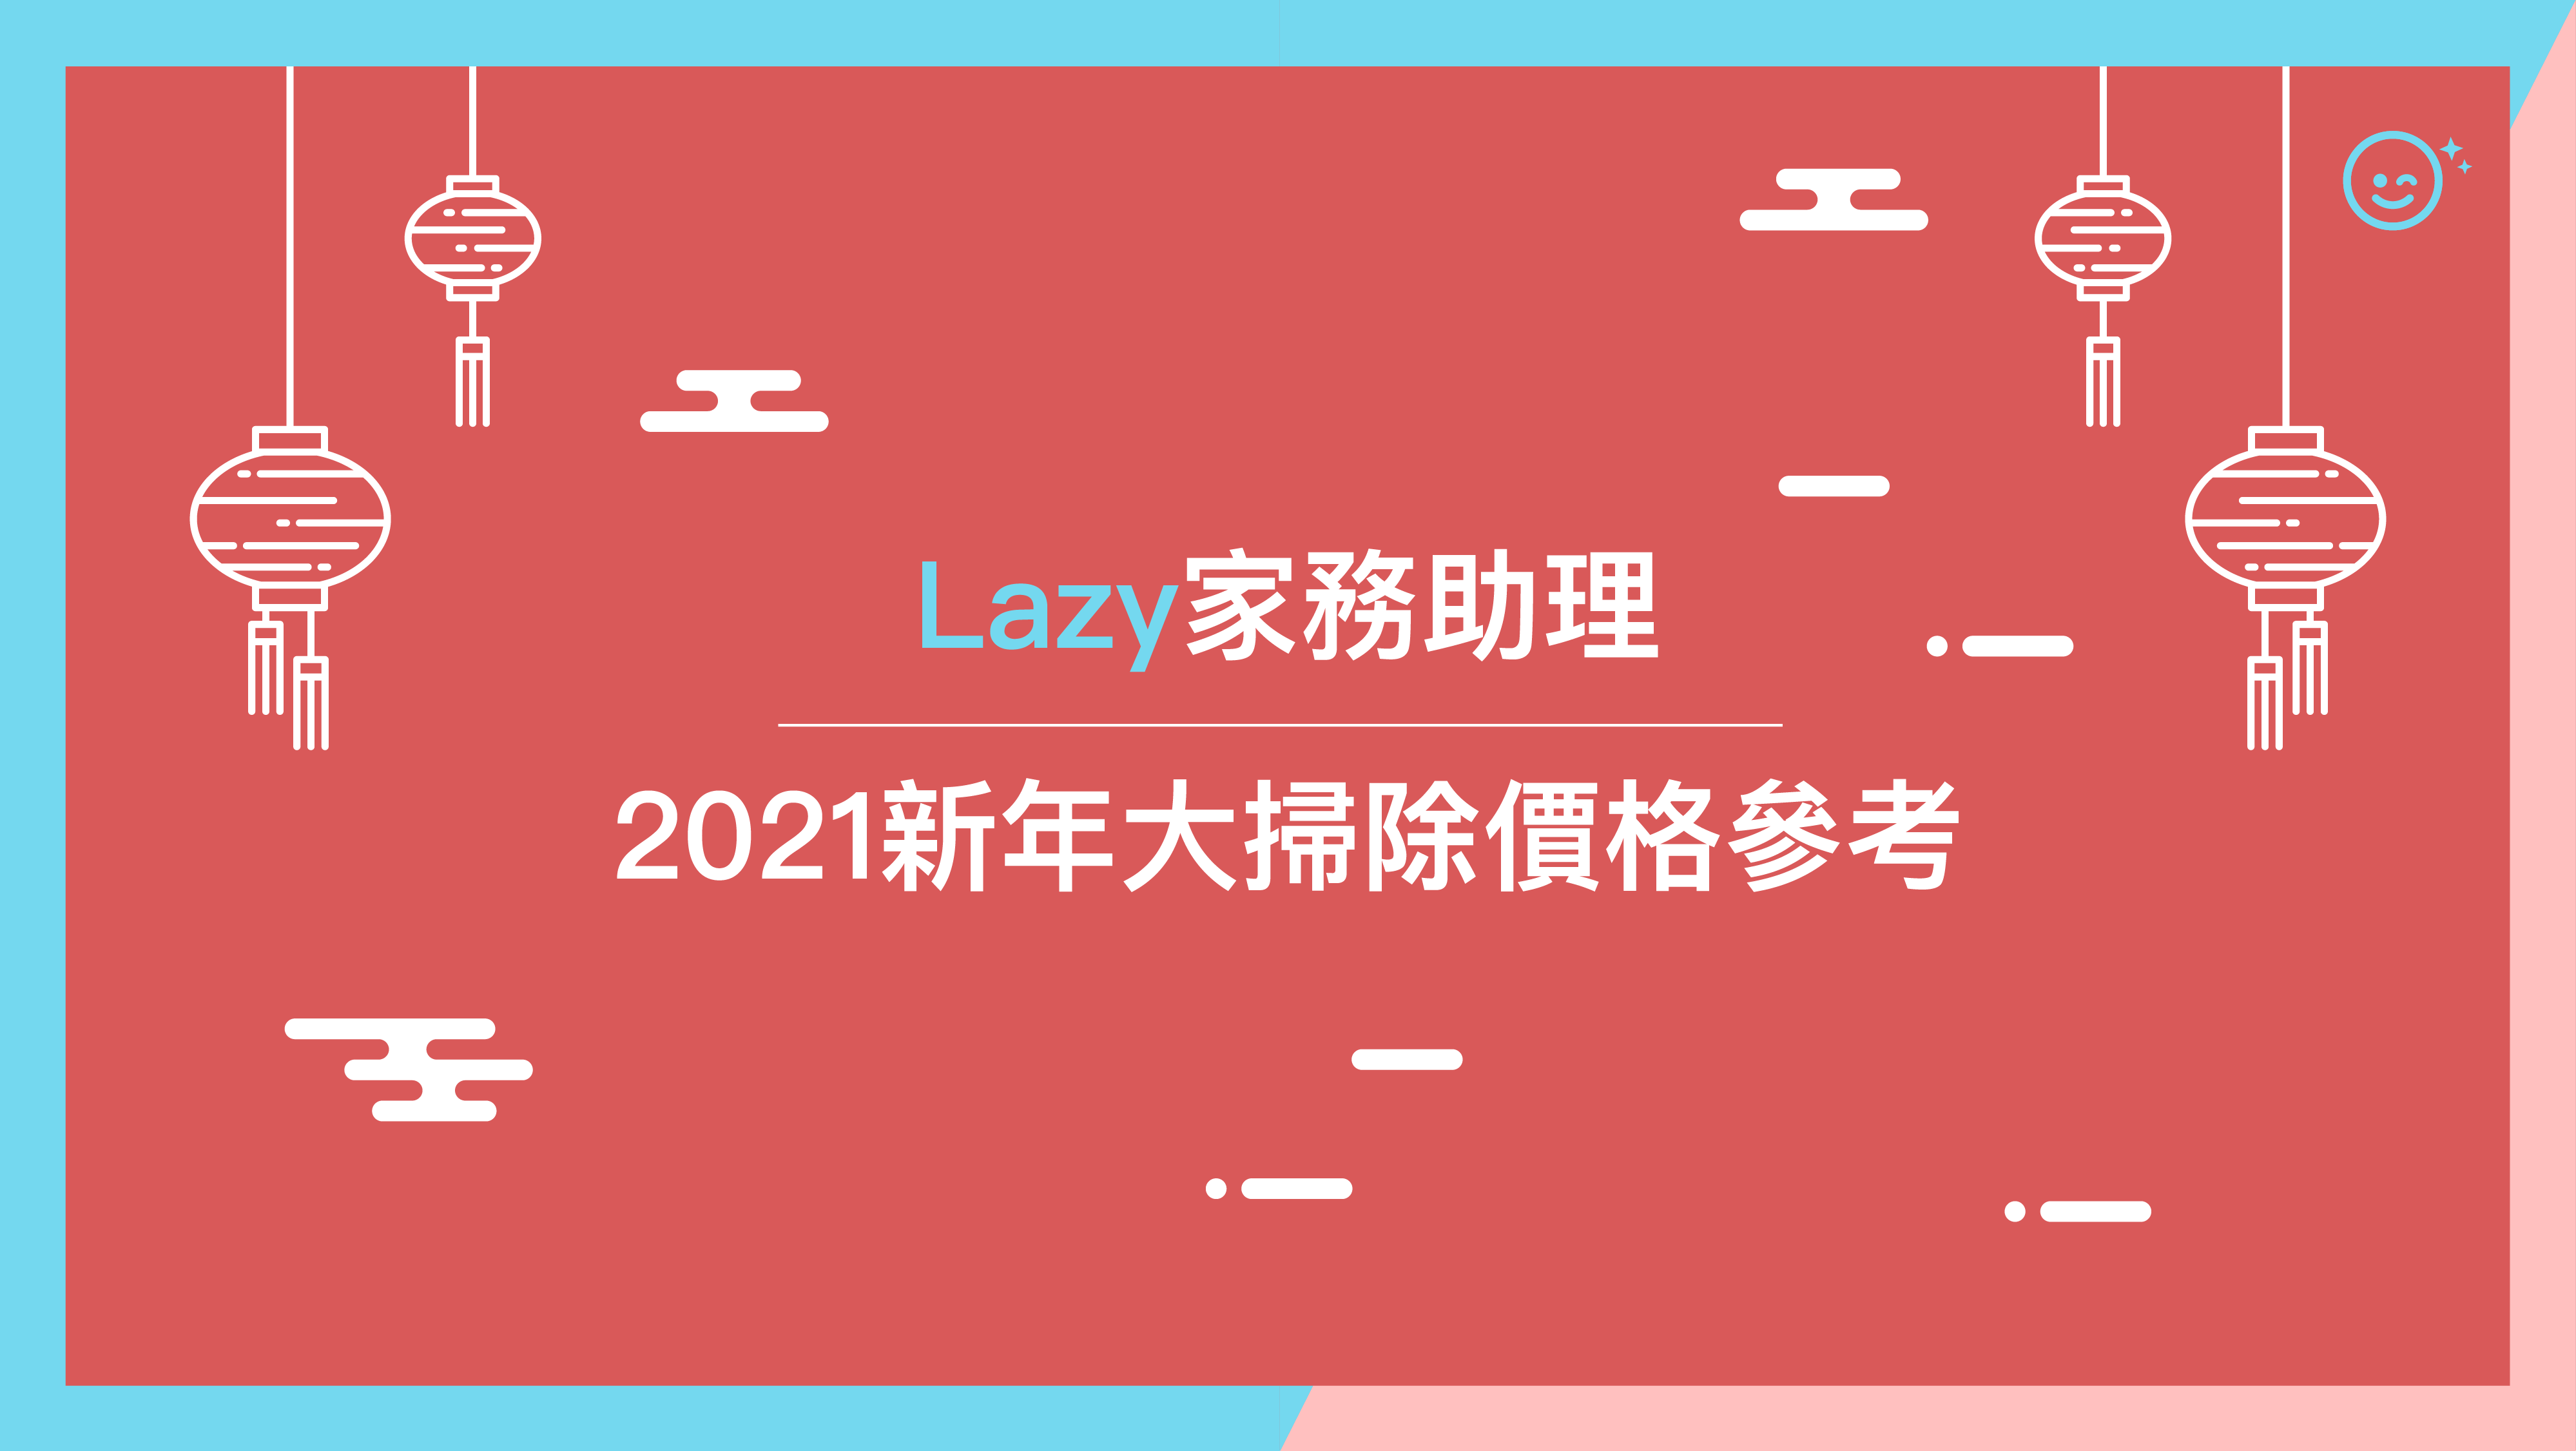 
                                        Lazy家務助理2021新年大掃除價格參考 
                    